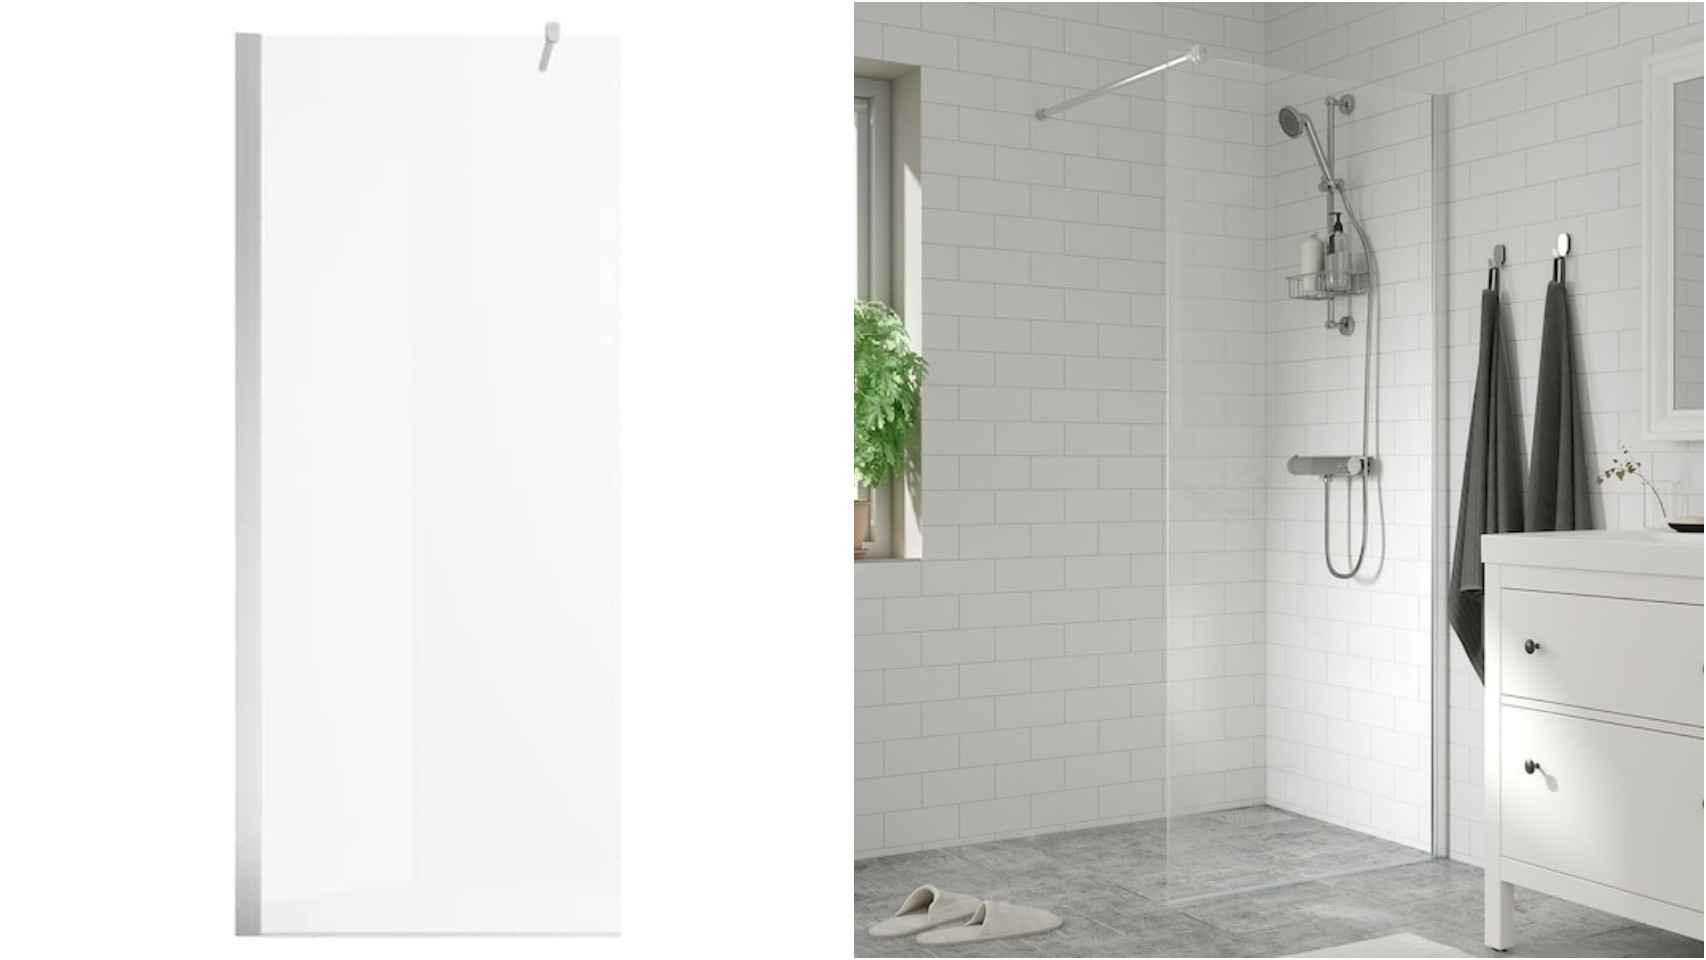 La nueva mampara de Ikea que arrasa en ventas en España y es perfecta para el baño.